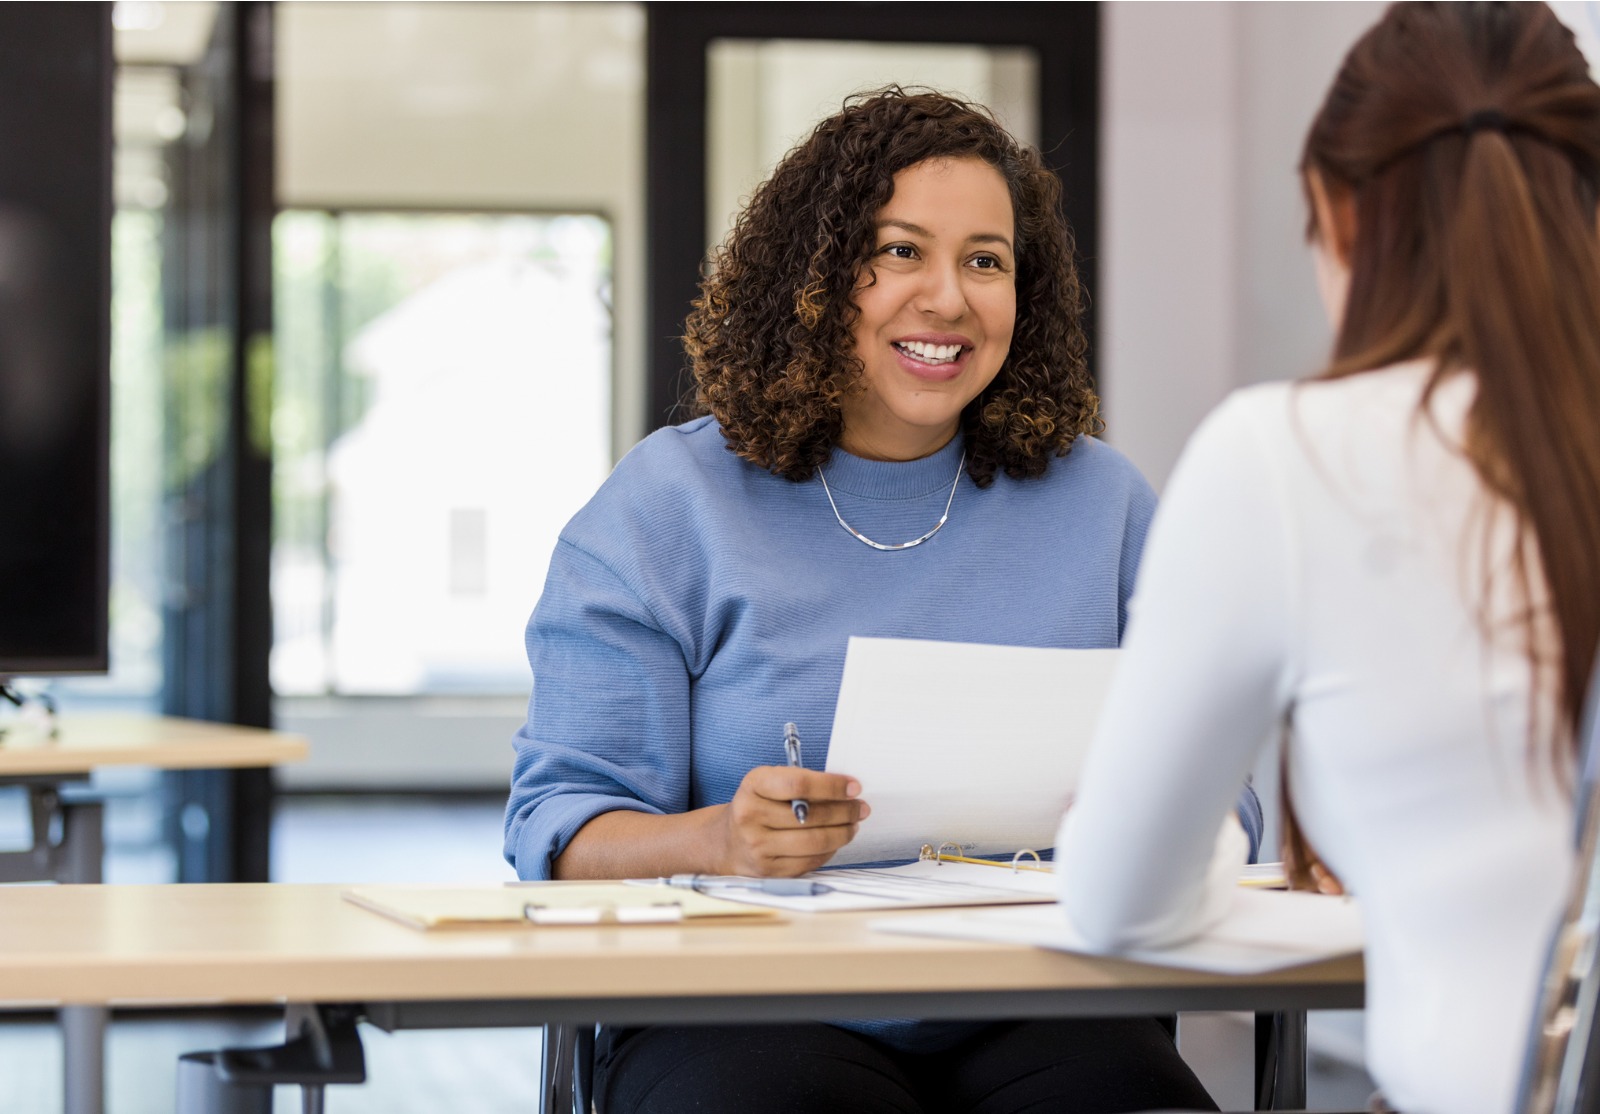 Une femme souriante tenant des feuilles et un stylo derrière un bureau parle à une autre femme.